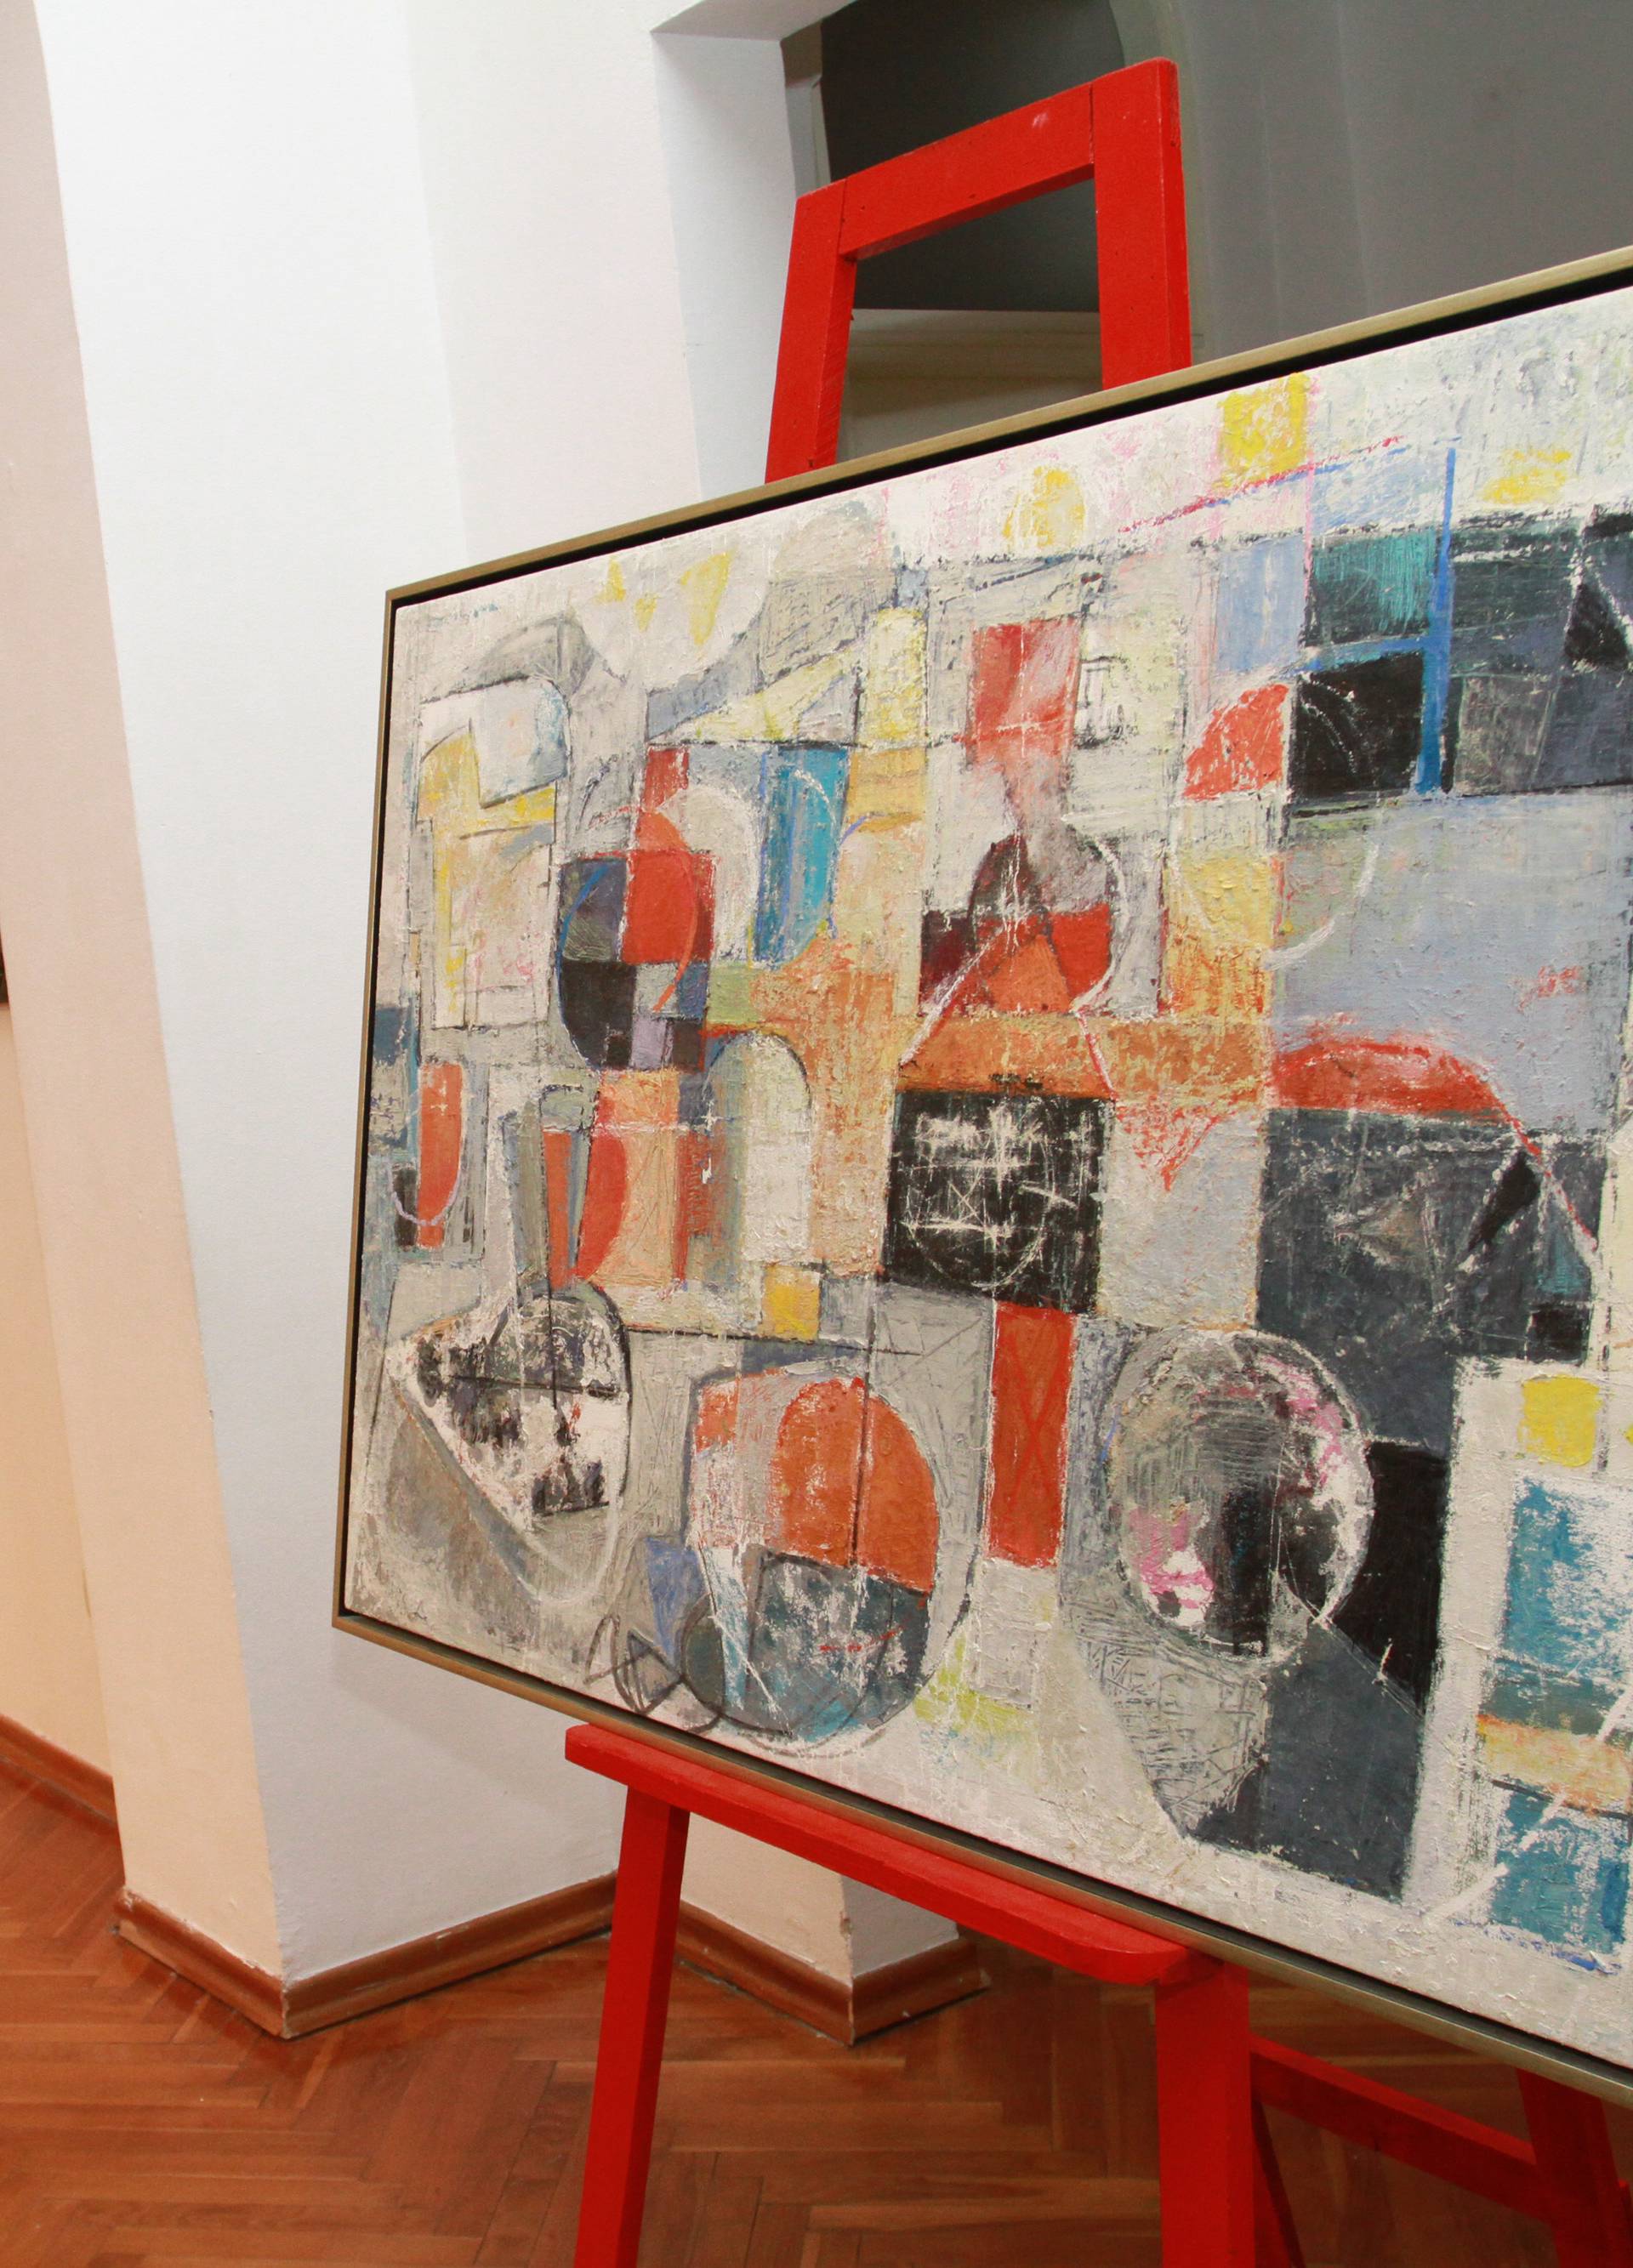 Frano Missia (92) izlagao je s Picassom, a još slika svaki dan